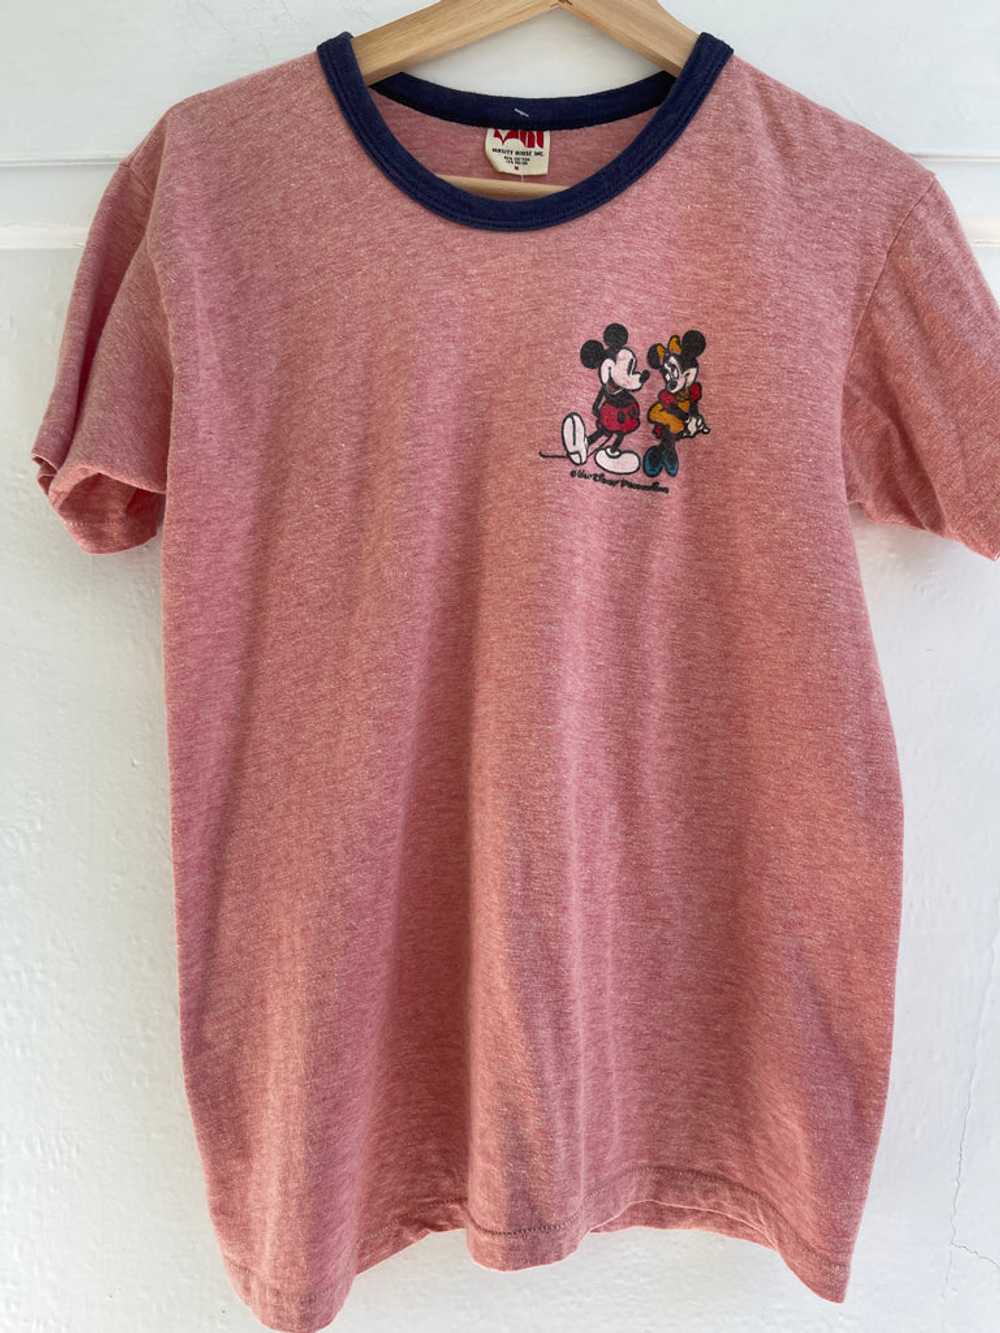 Vintage Disney ringer t shirt - image 5